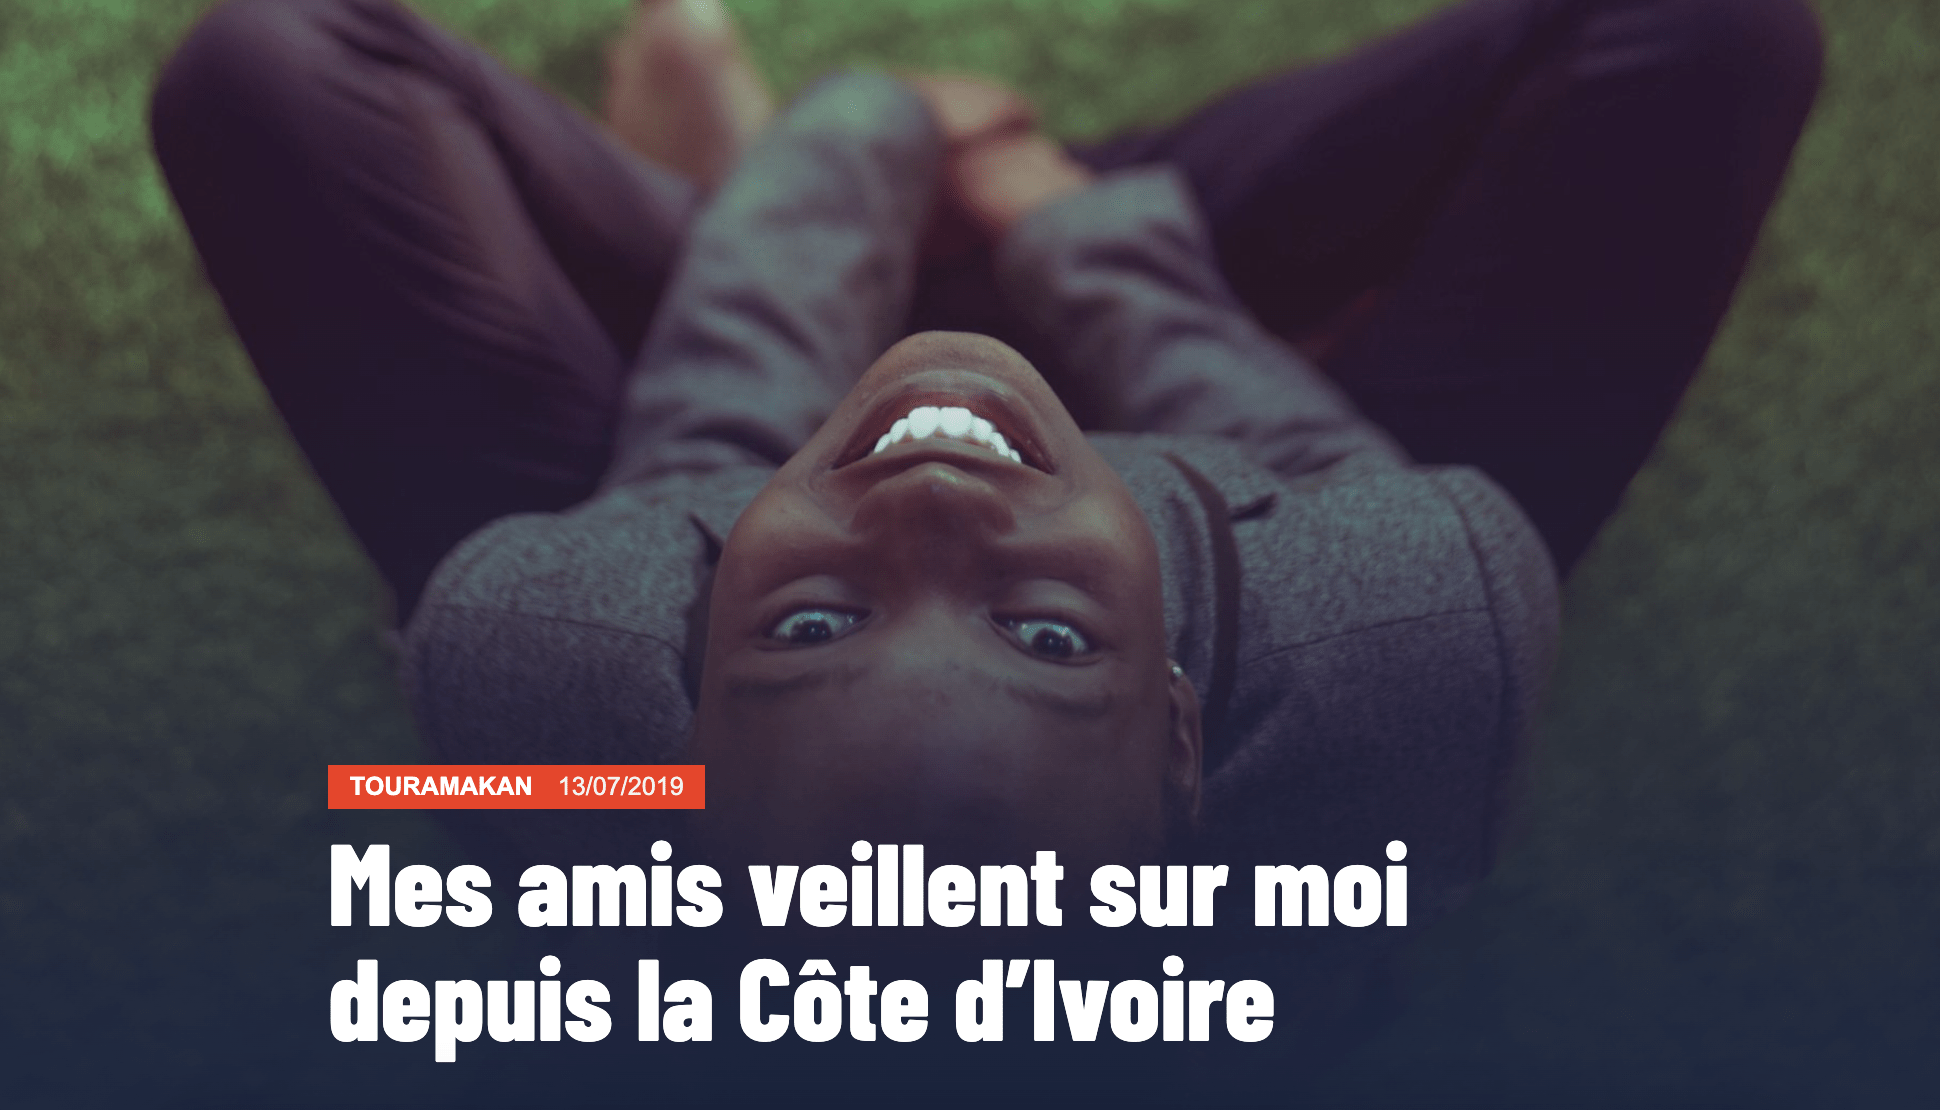 Miniature de l'article : "Mes amis veillent sur moi depuis la Côte d'Ivoire". 